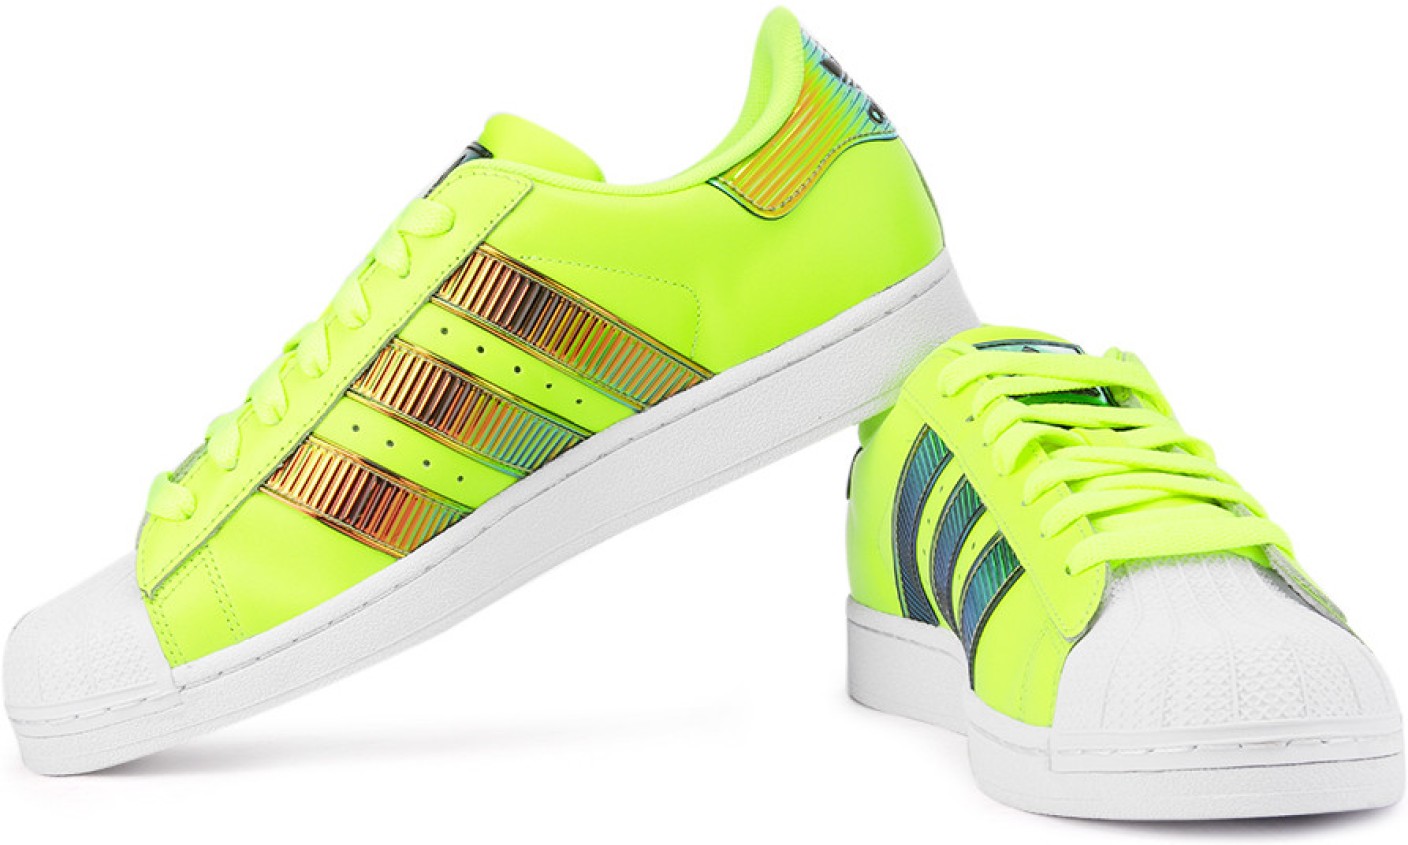 ADIDAS ORIGINALS Superstar Bling Xl Sneakers For Men - Buy Neon Green ...